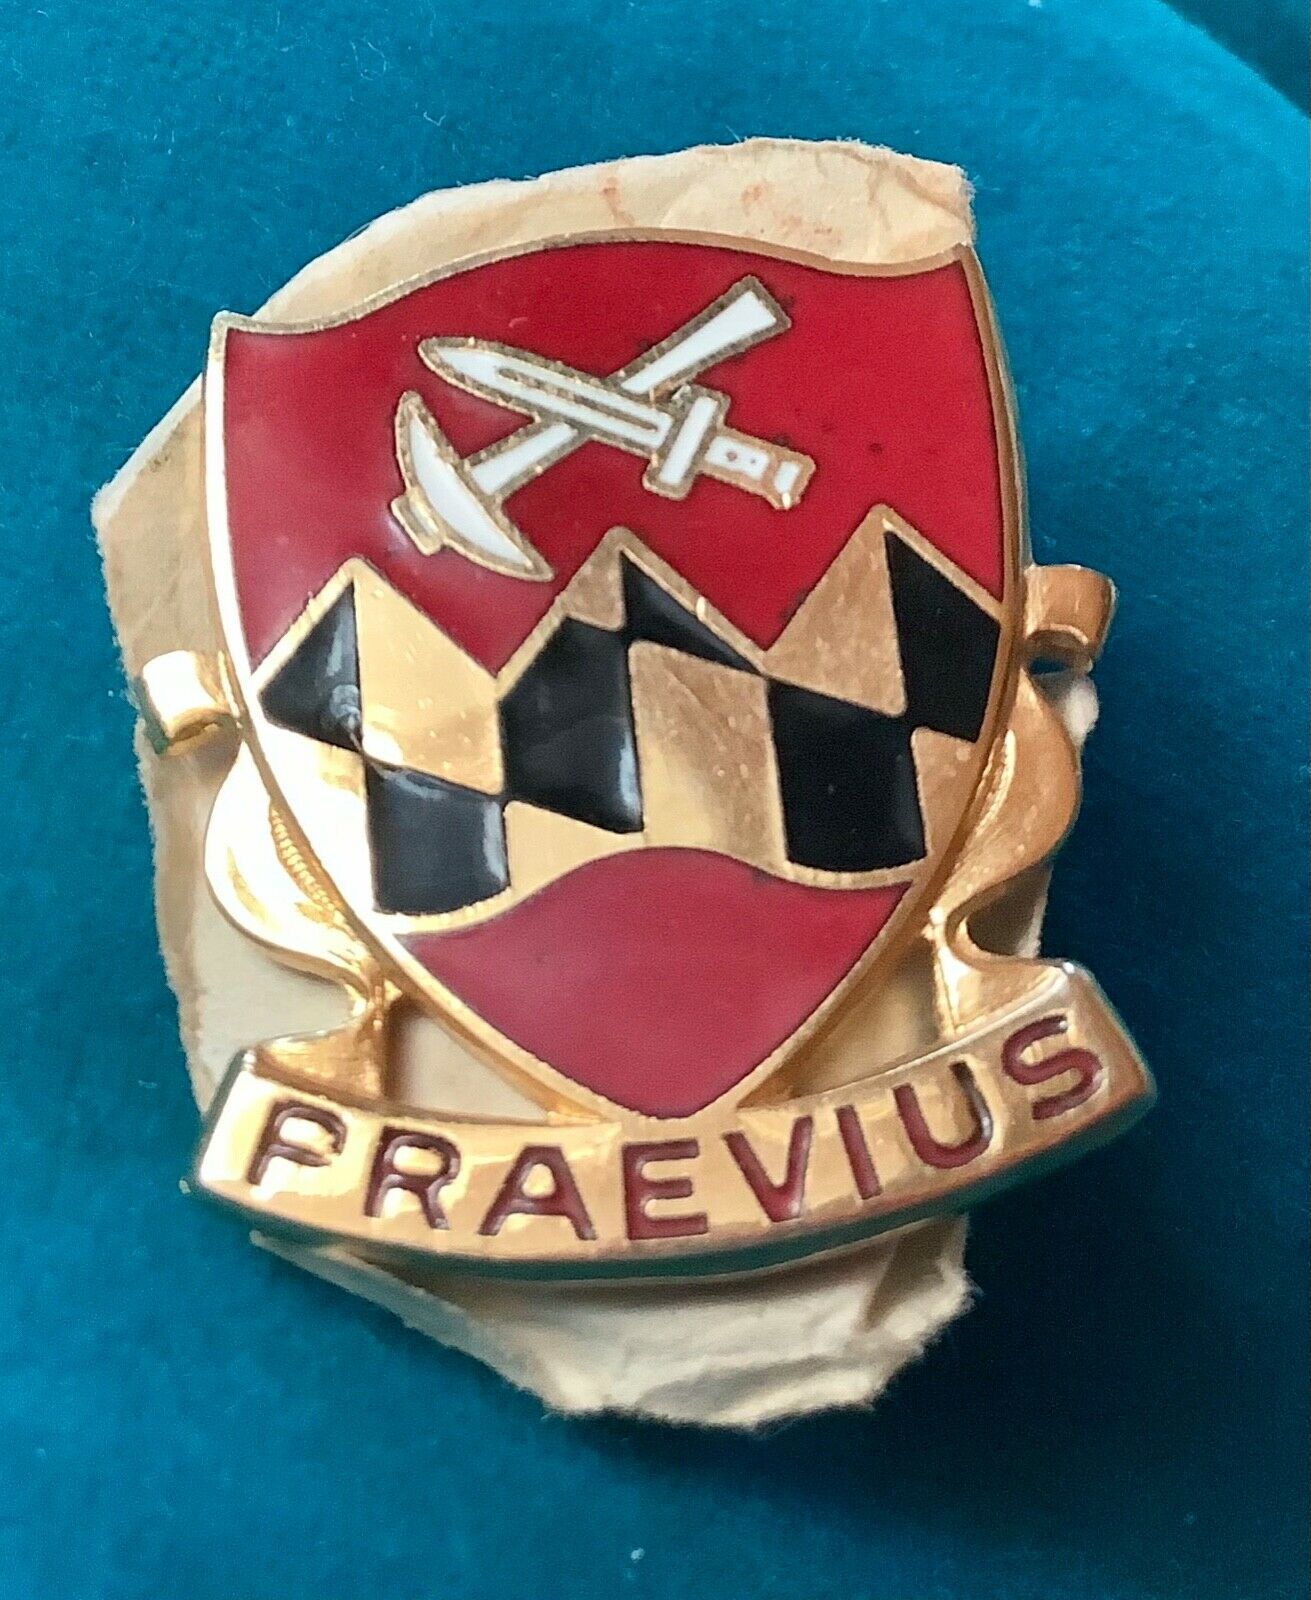 US Military 121st Engineer Battalion Insignia Pin - Praevius